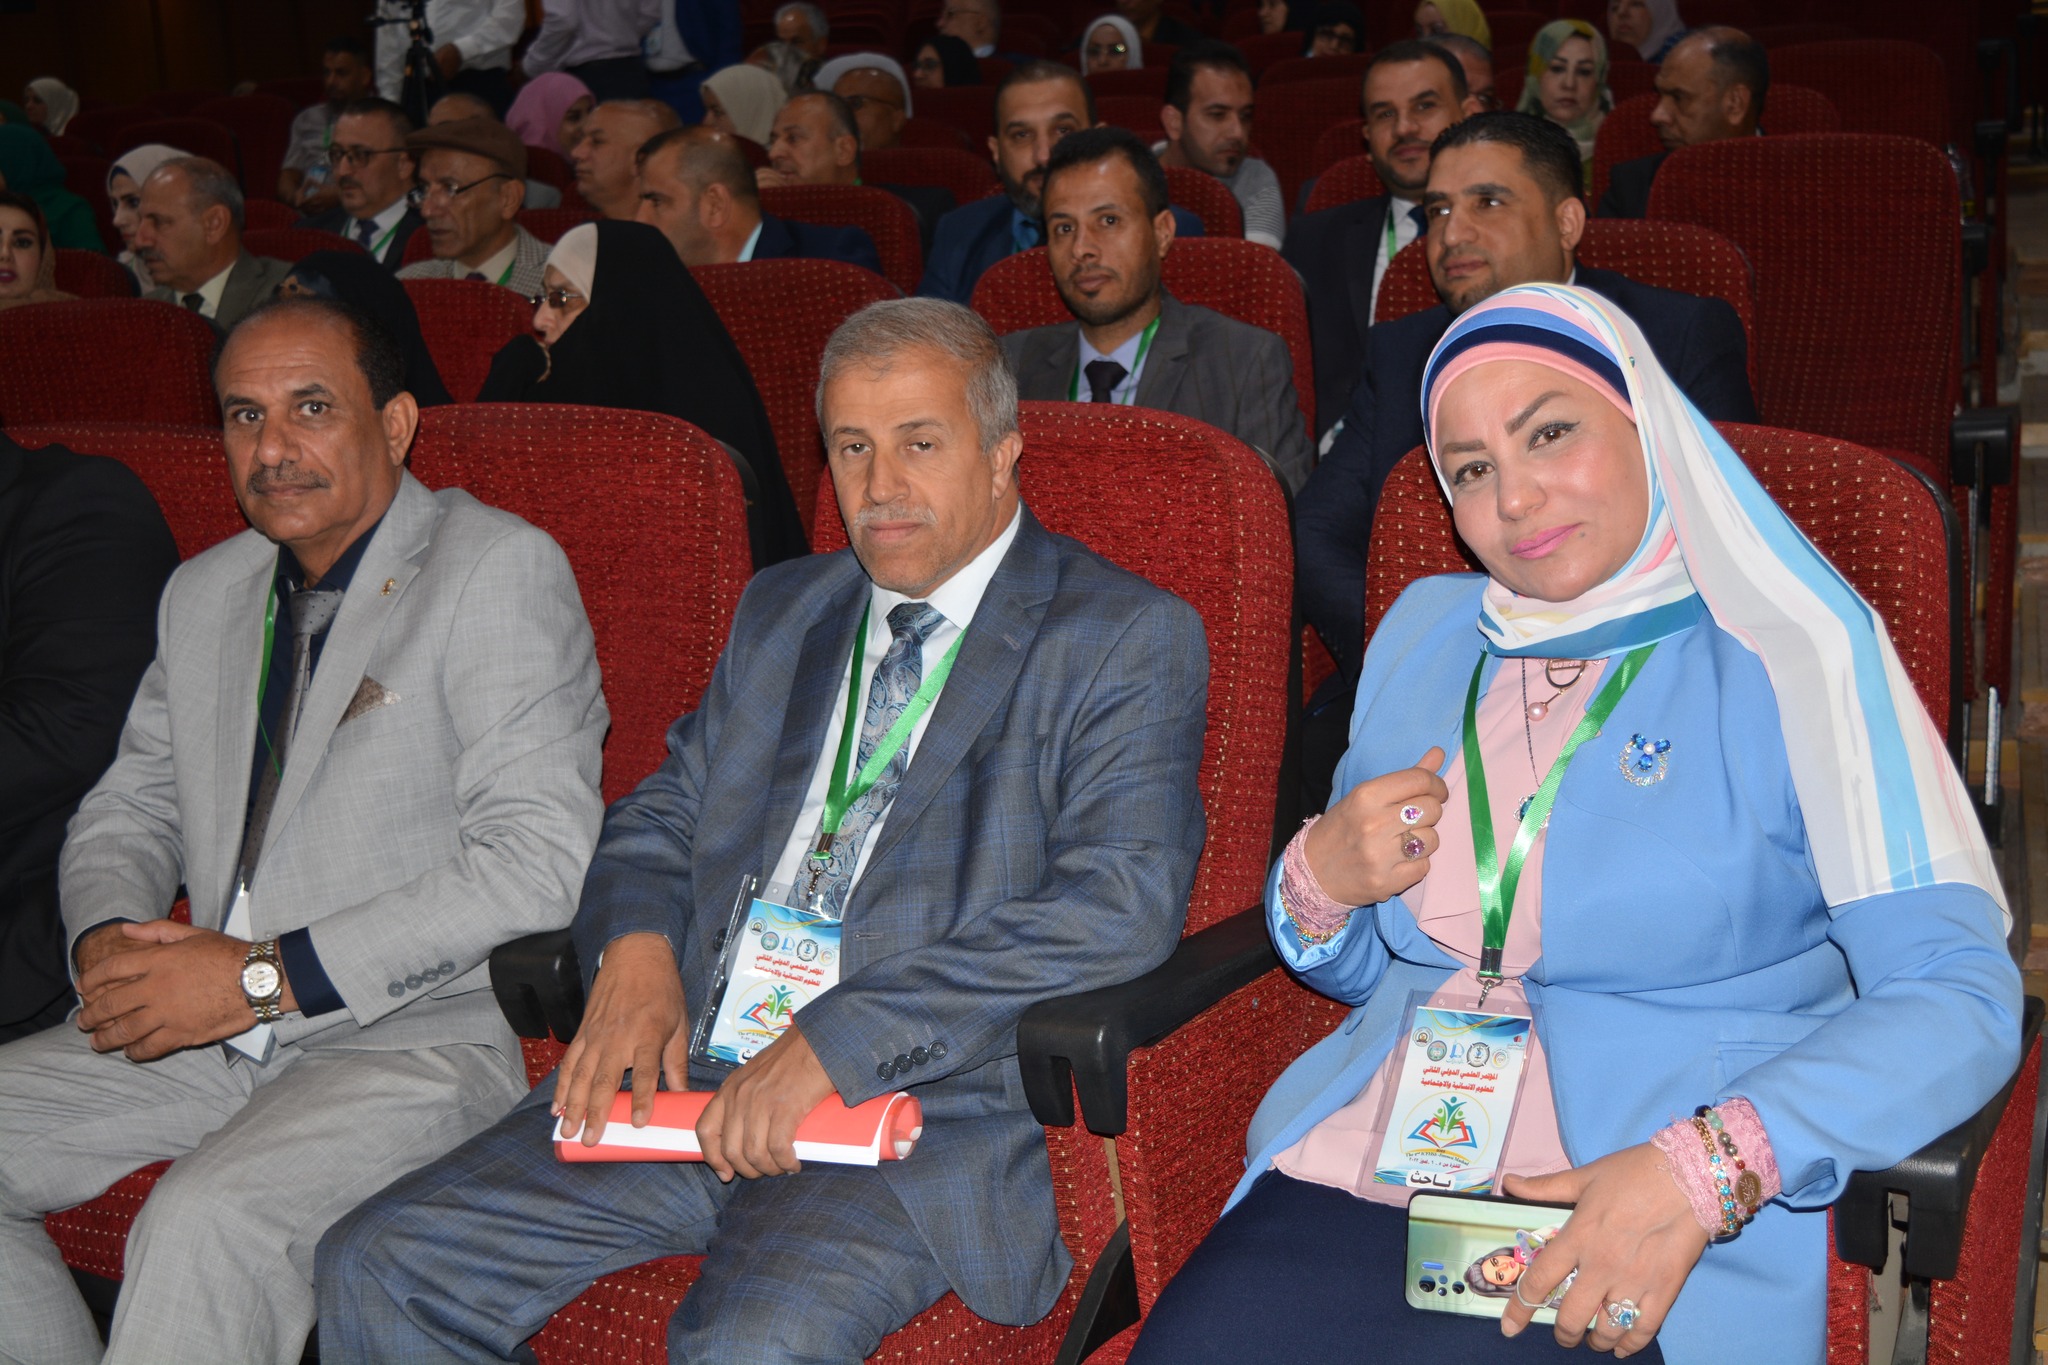 جامعة فردوسي مشهد بالمشاركة مع مؤسسة الفراتين للتنمية والتطوير تقيم مؤتمرها العلمي الثاني .